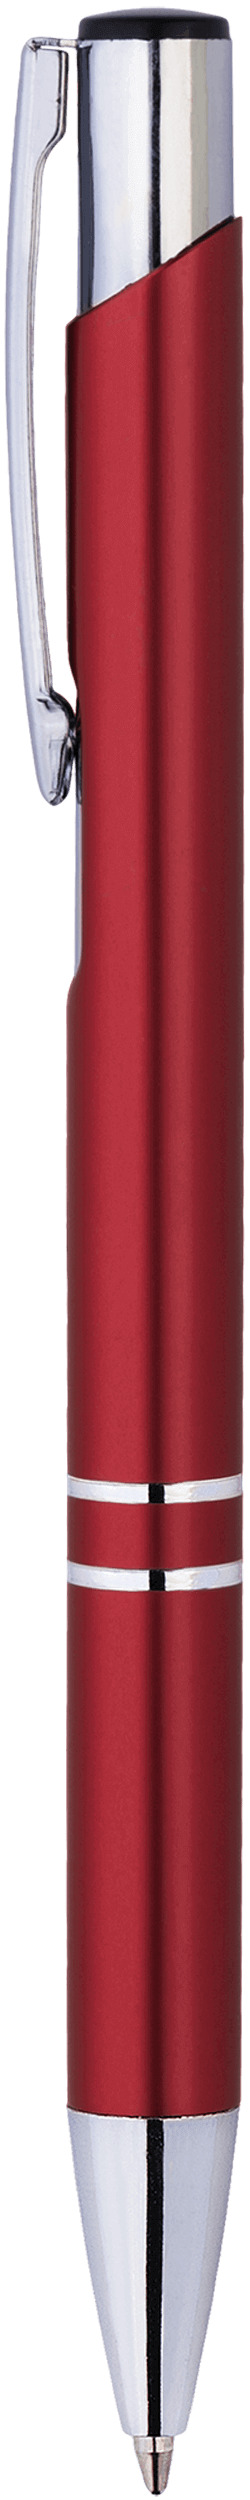 Шариковая ручка Kosko Premium, темно-красная, вид сбоку